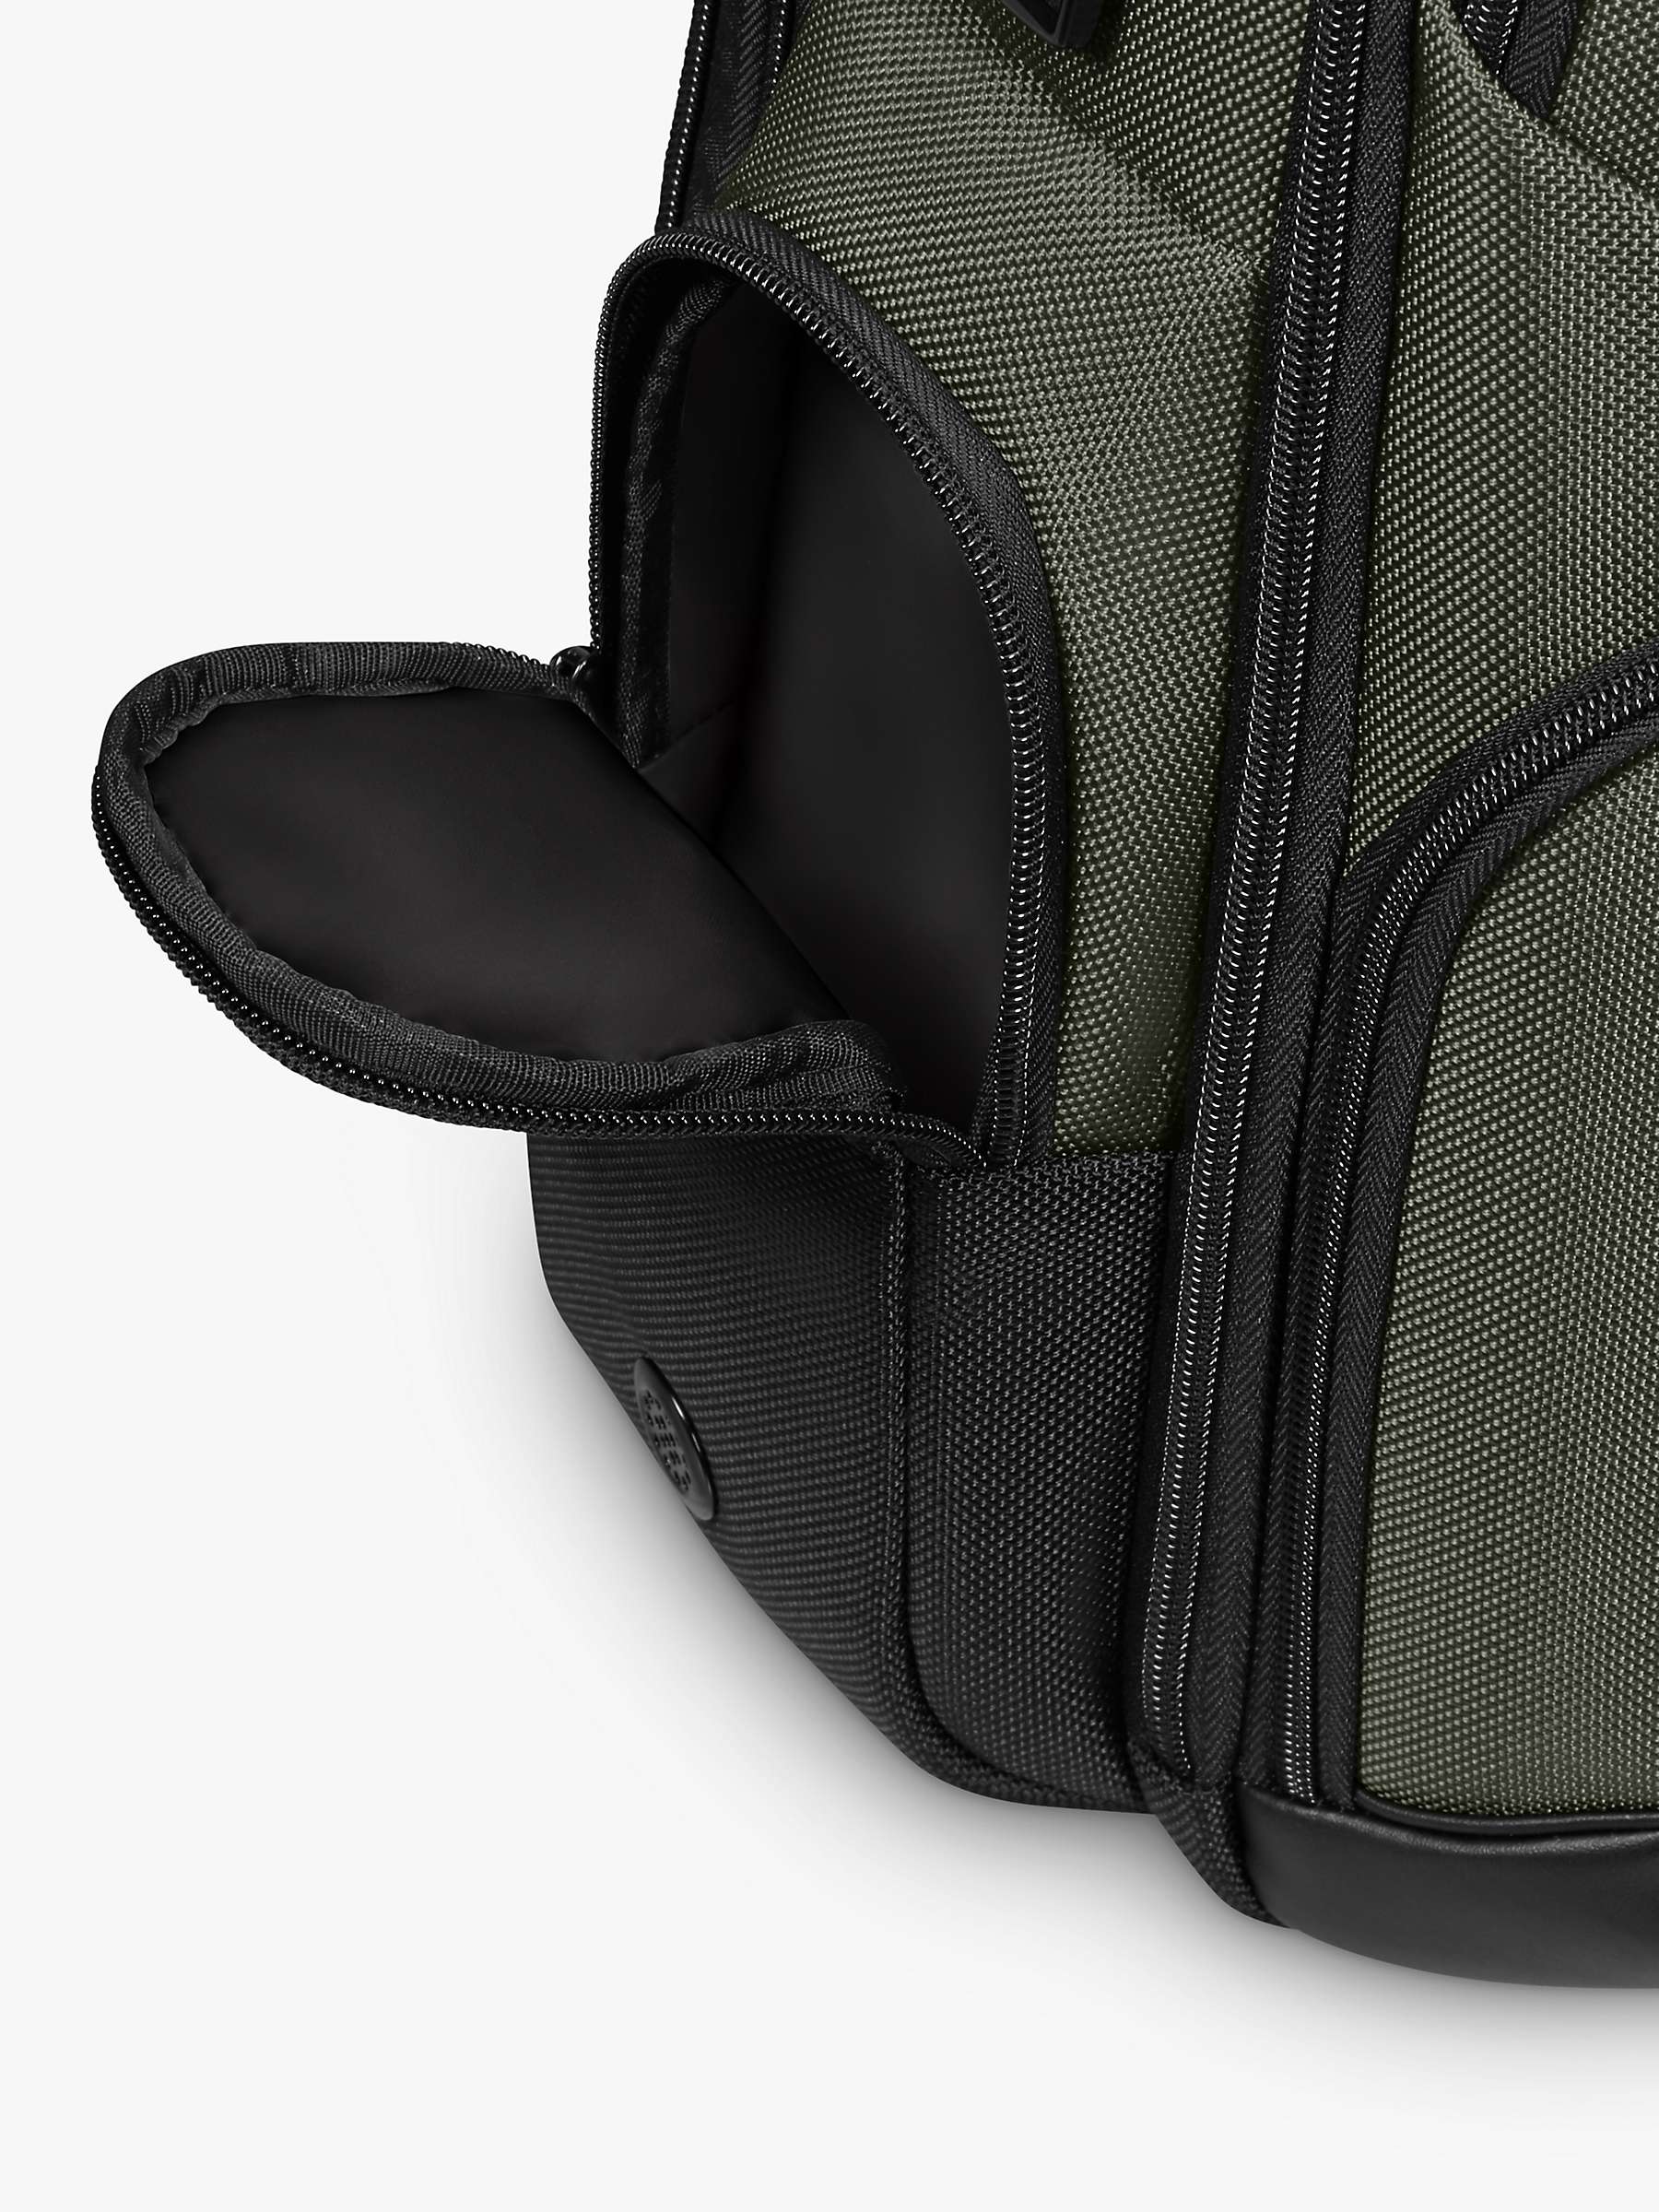 Buy Samsonite Pro-DLX 6 15.6" Laptop Backpack Online at johnlewis.com